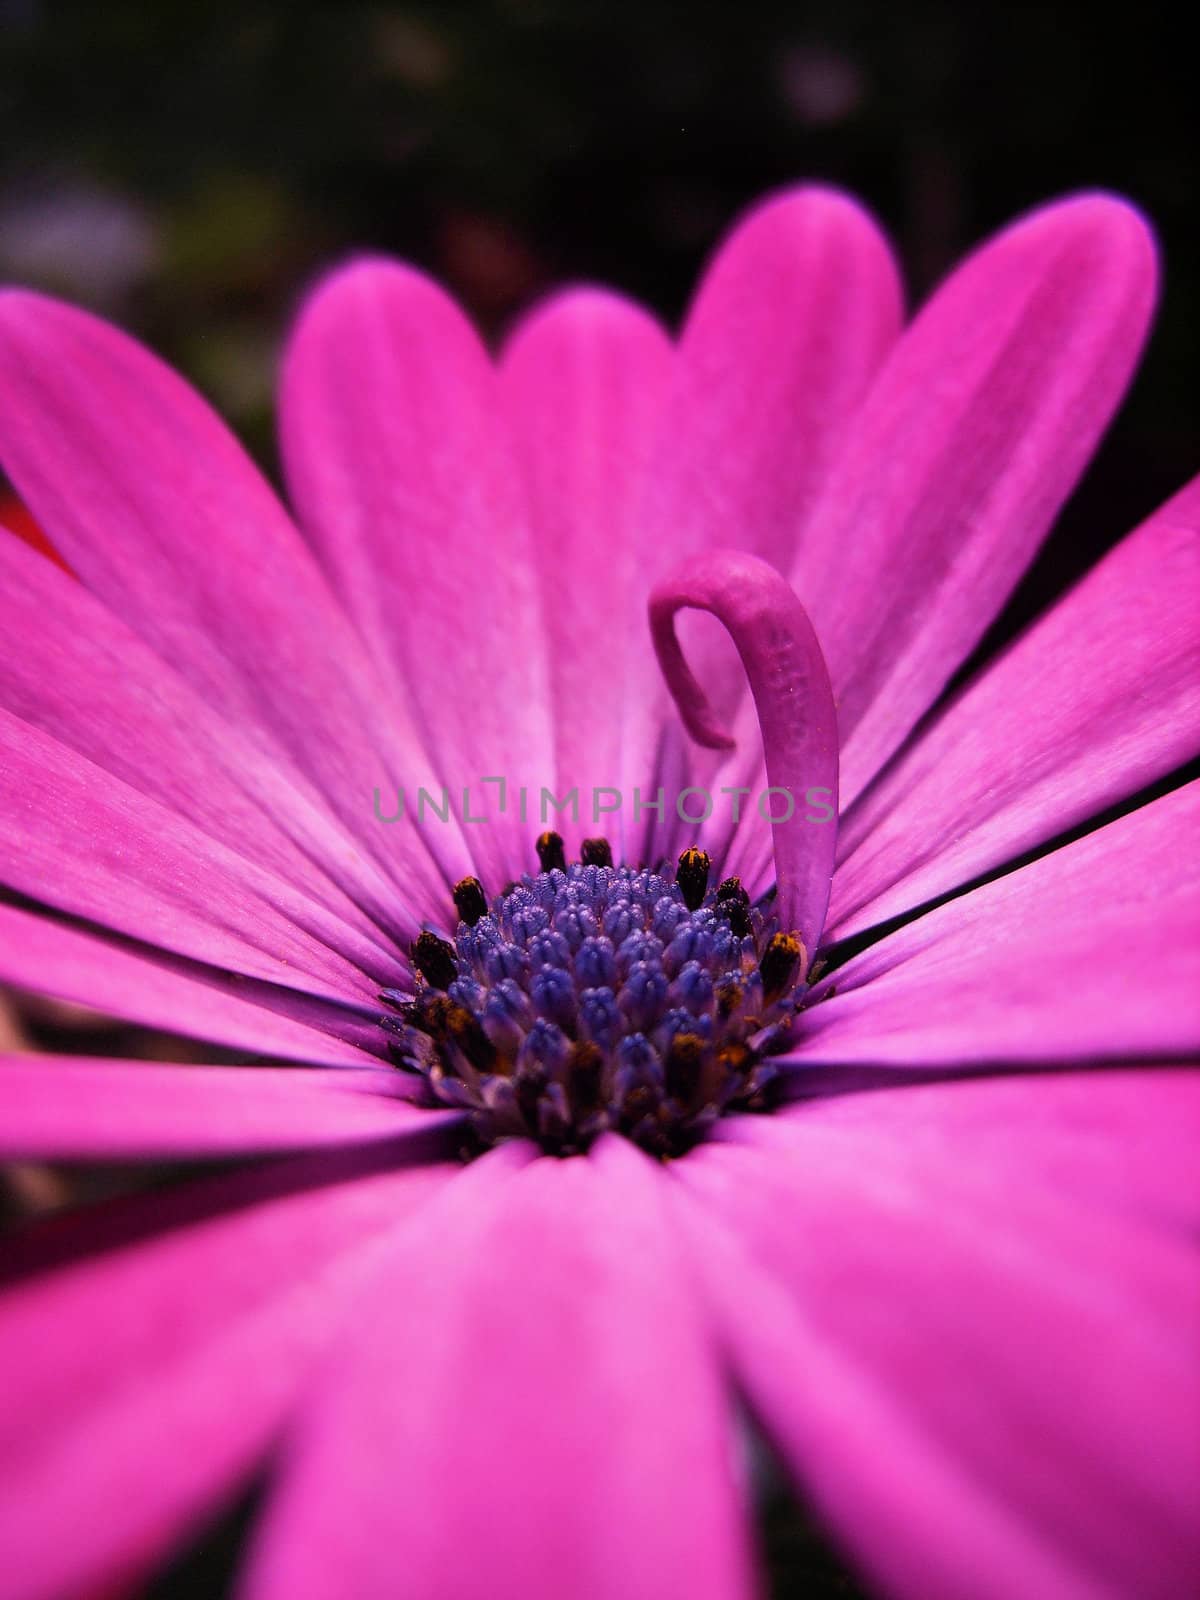 A violet flower.